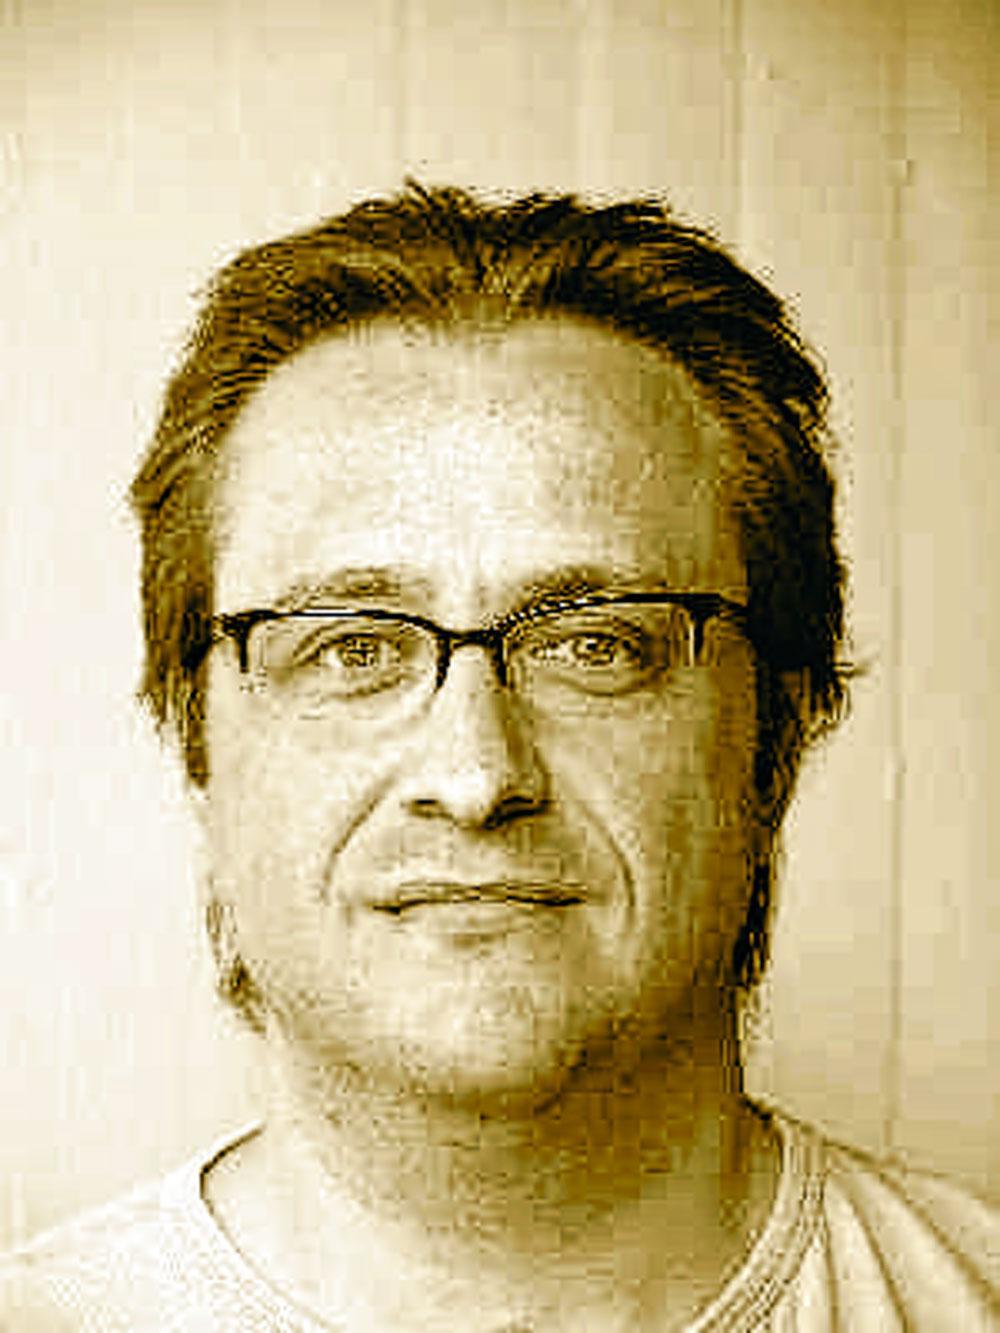 Stefan Grondelaers